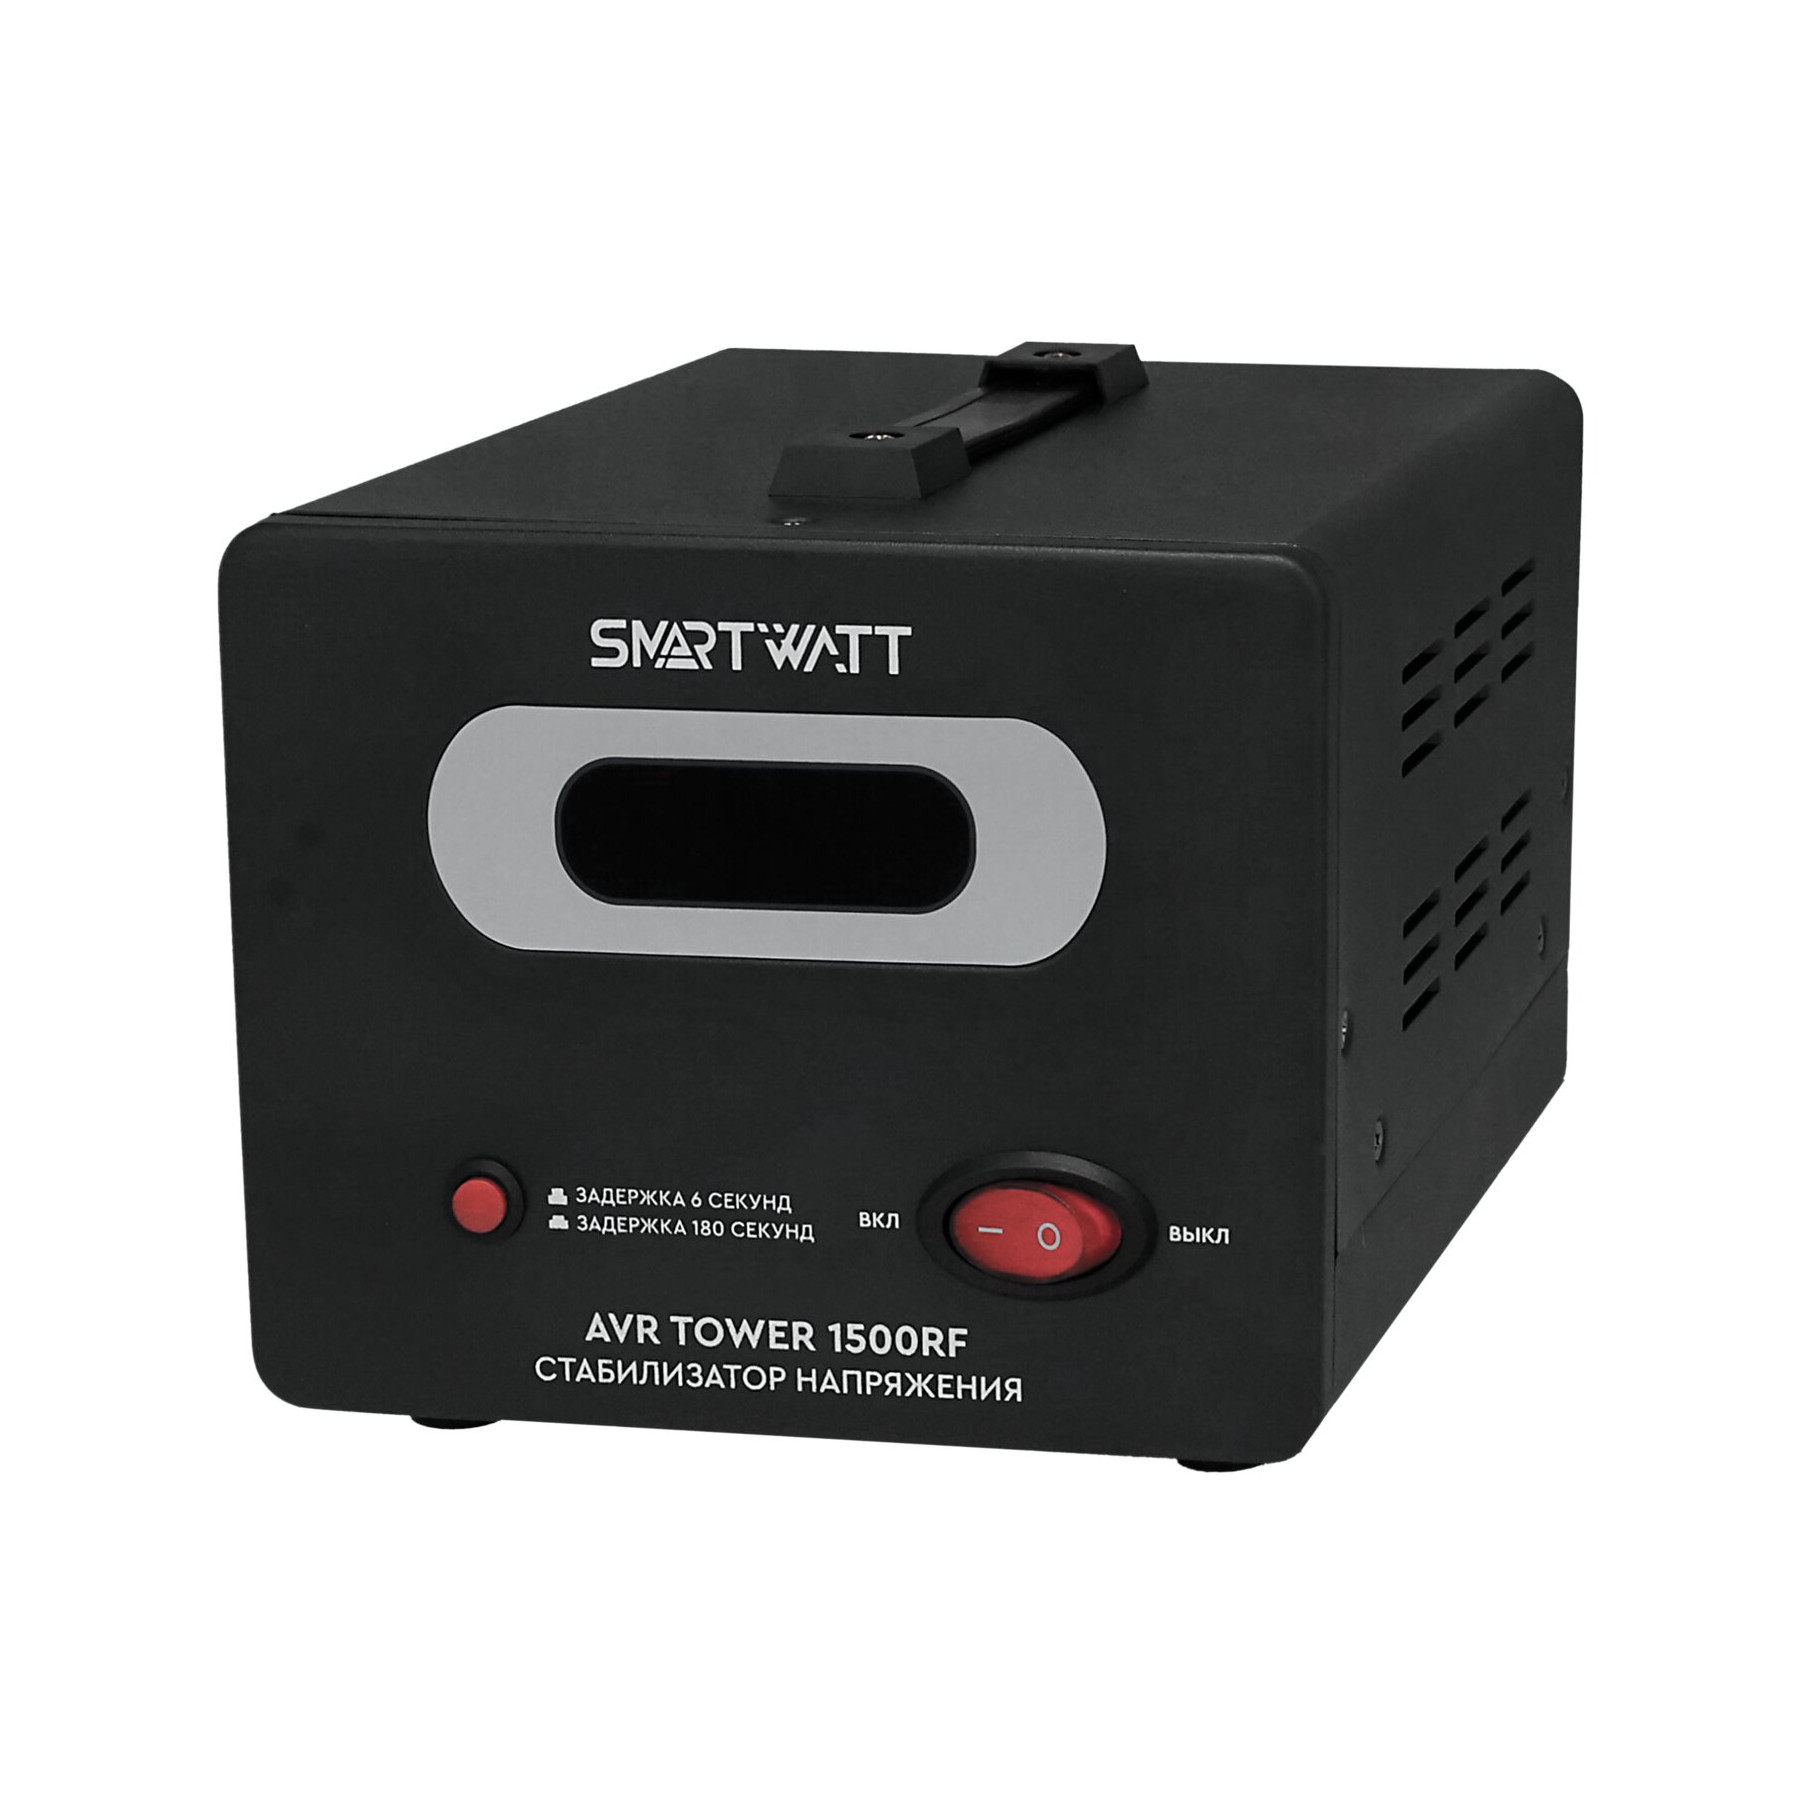 Стабилизатор напряжения SMARTWATT AVR TOWER 1500RF, 1500 VA, клеммная колодка, черный (4512020370004)